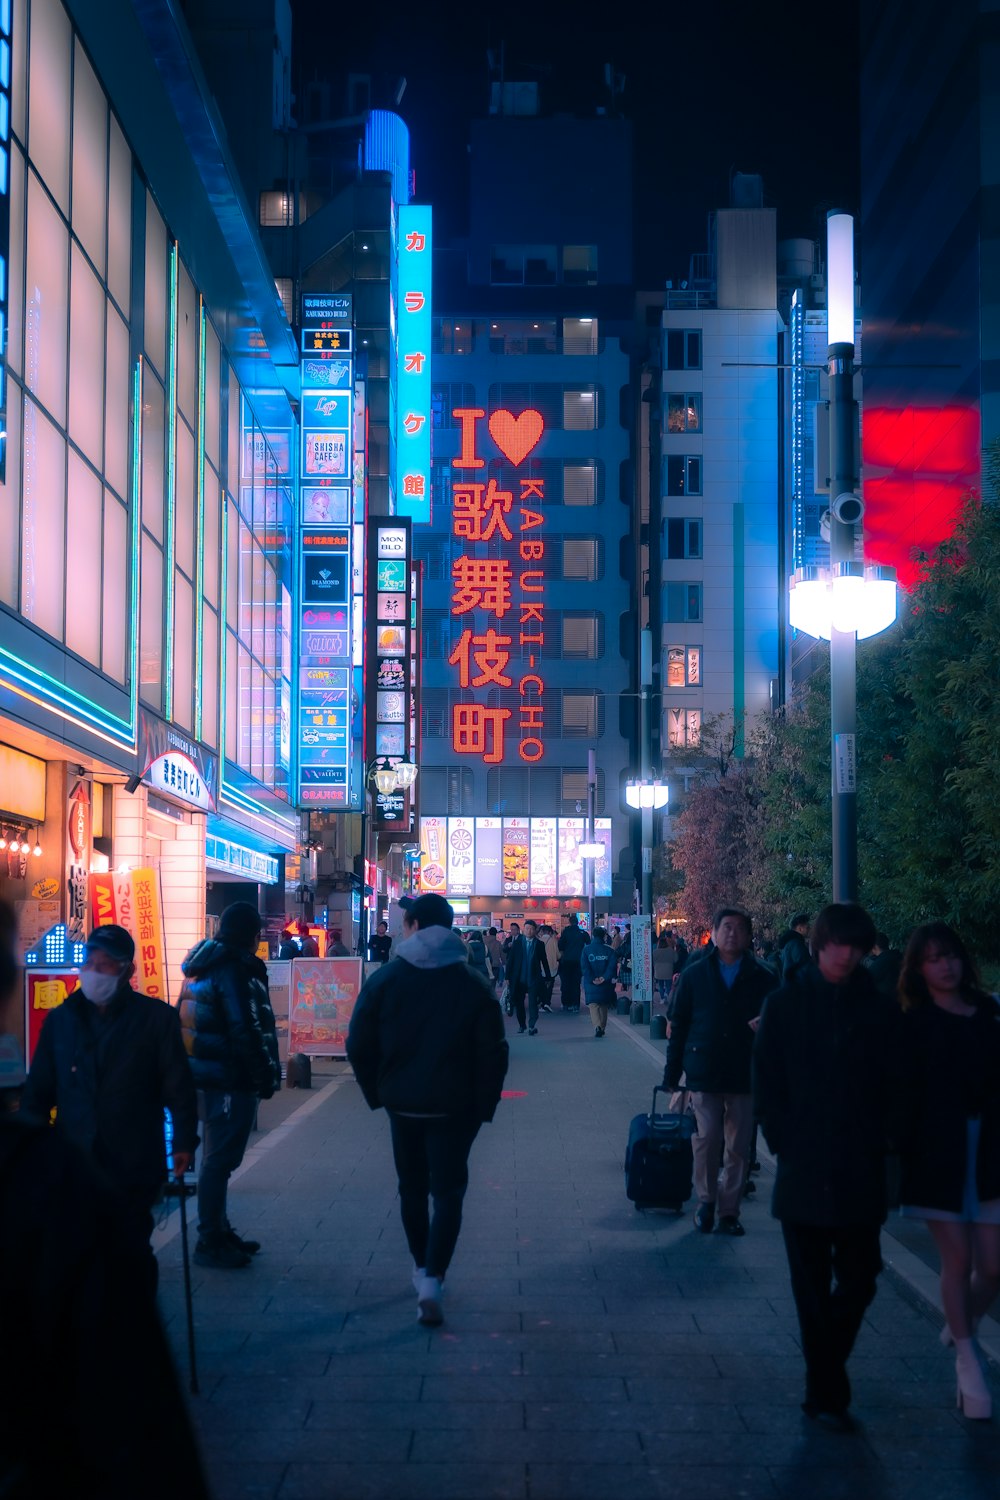 un groupe de personnes marchant dans une rue la nuit